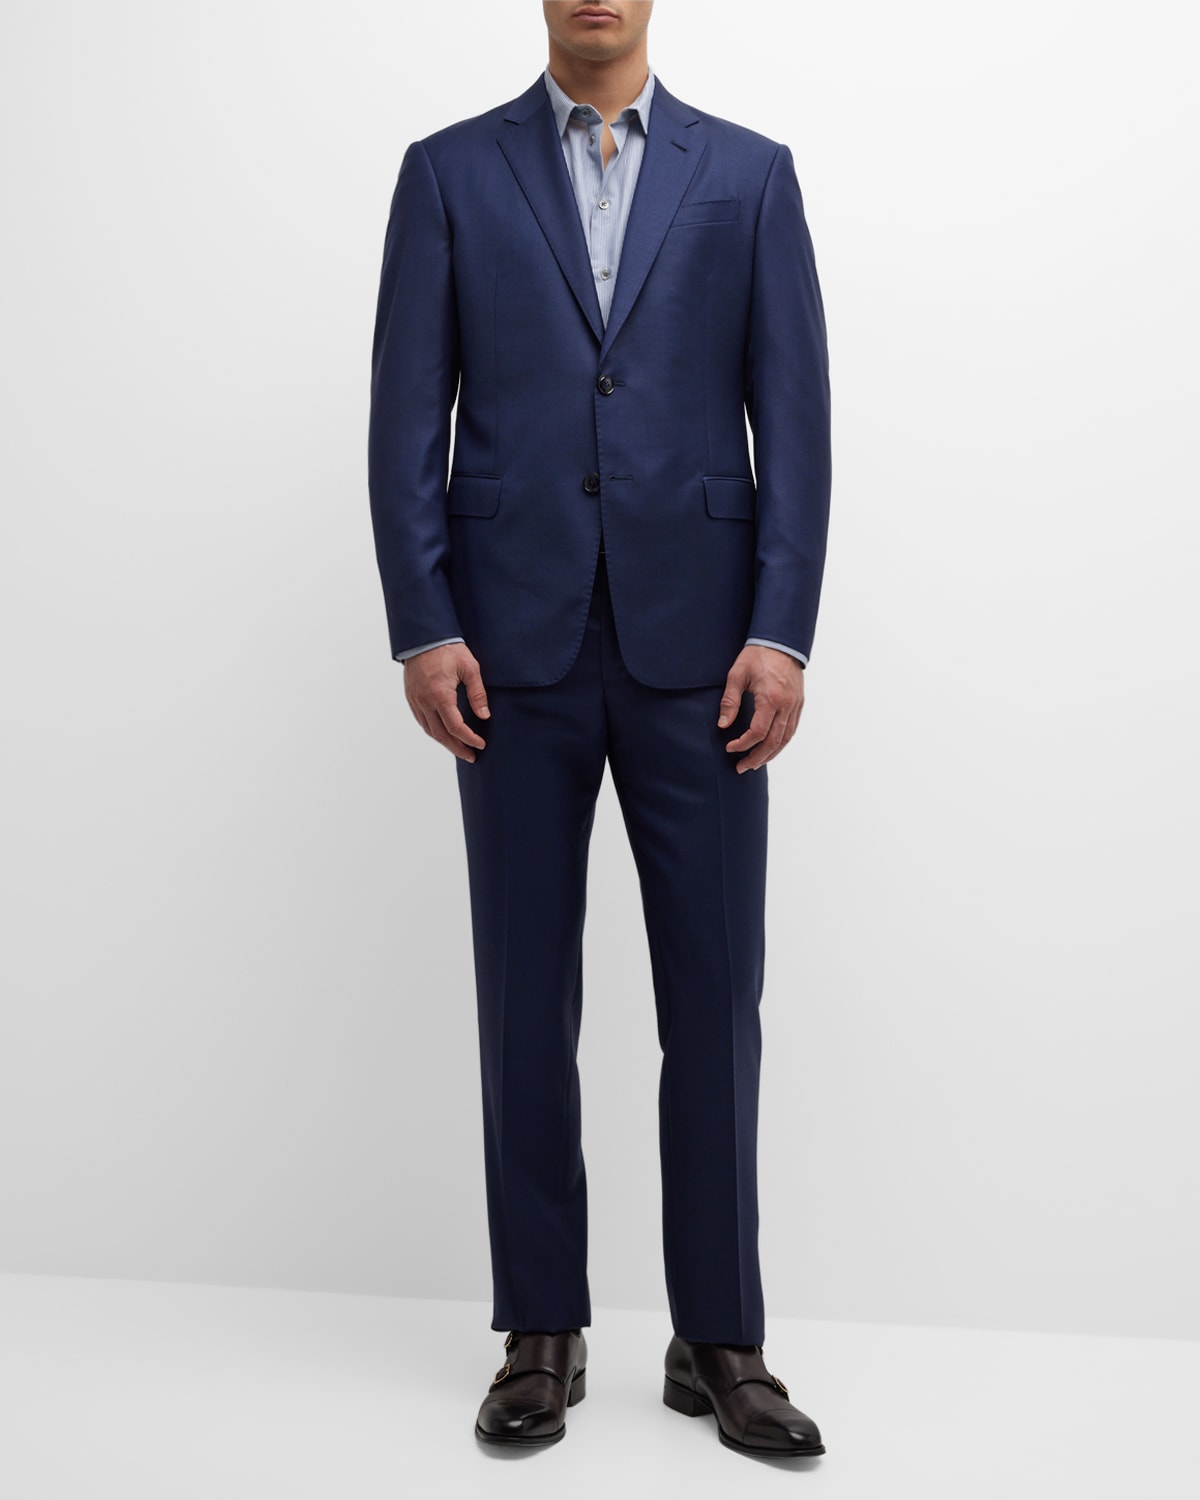 Giorgio Armani Men's Textured Wool Suit | Neiman Marcus